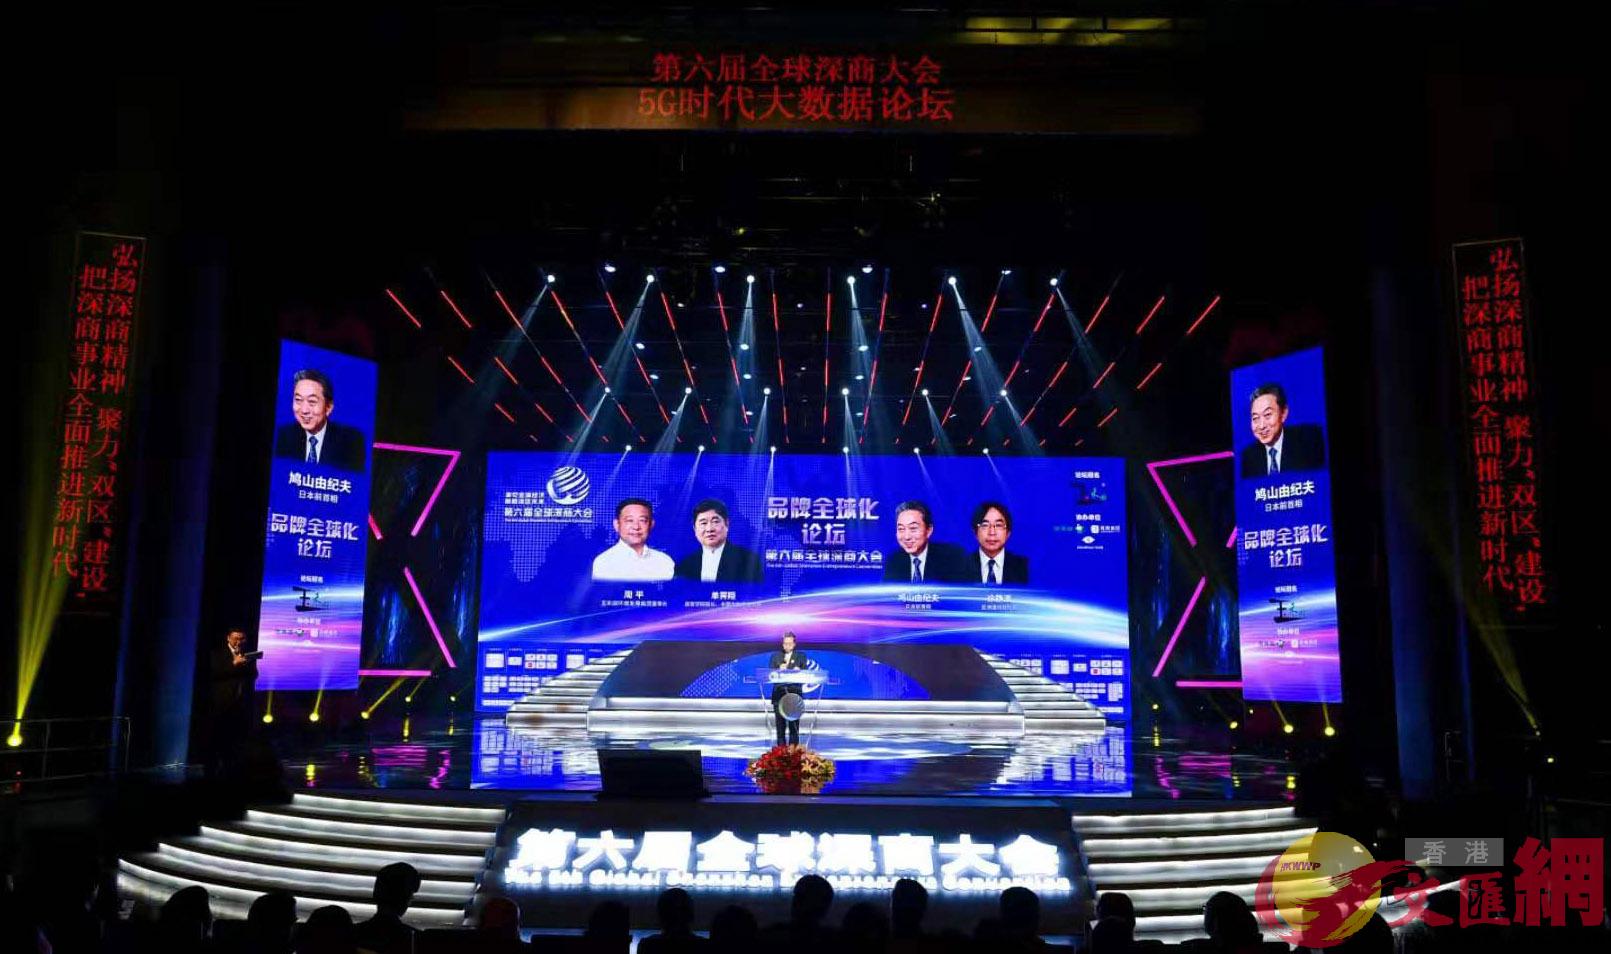 有u南方中國的經濟界奧斯卡v之稱的第六屆全球深商大會在深圳舉行]記者黃仰鵬 攝^